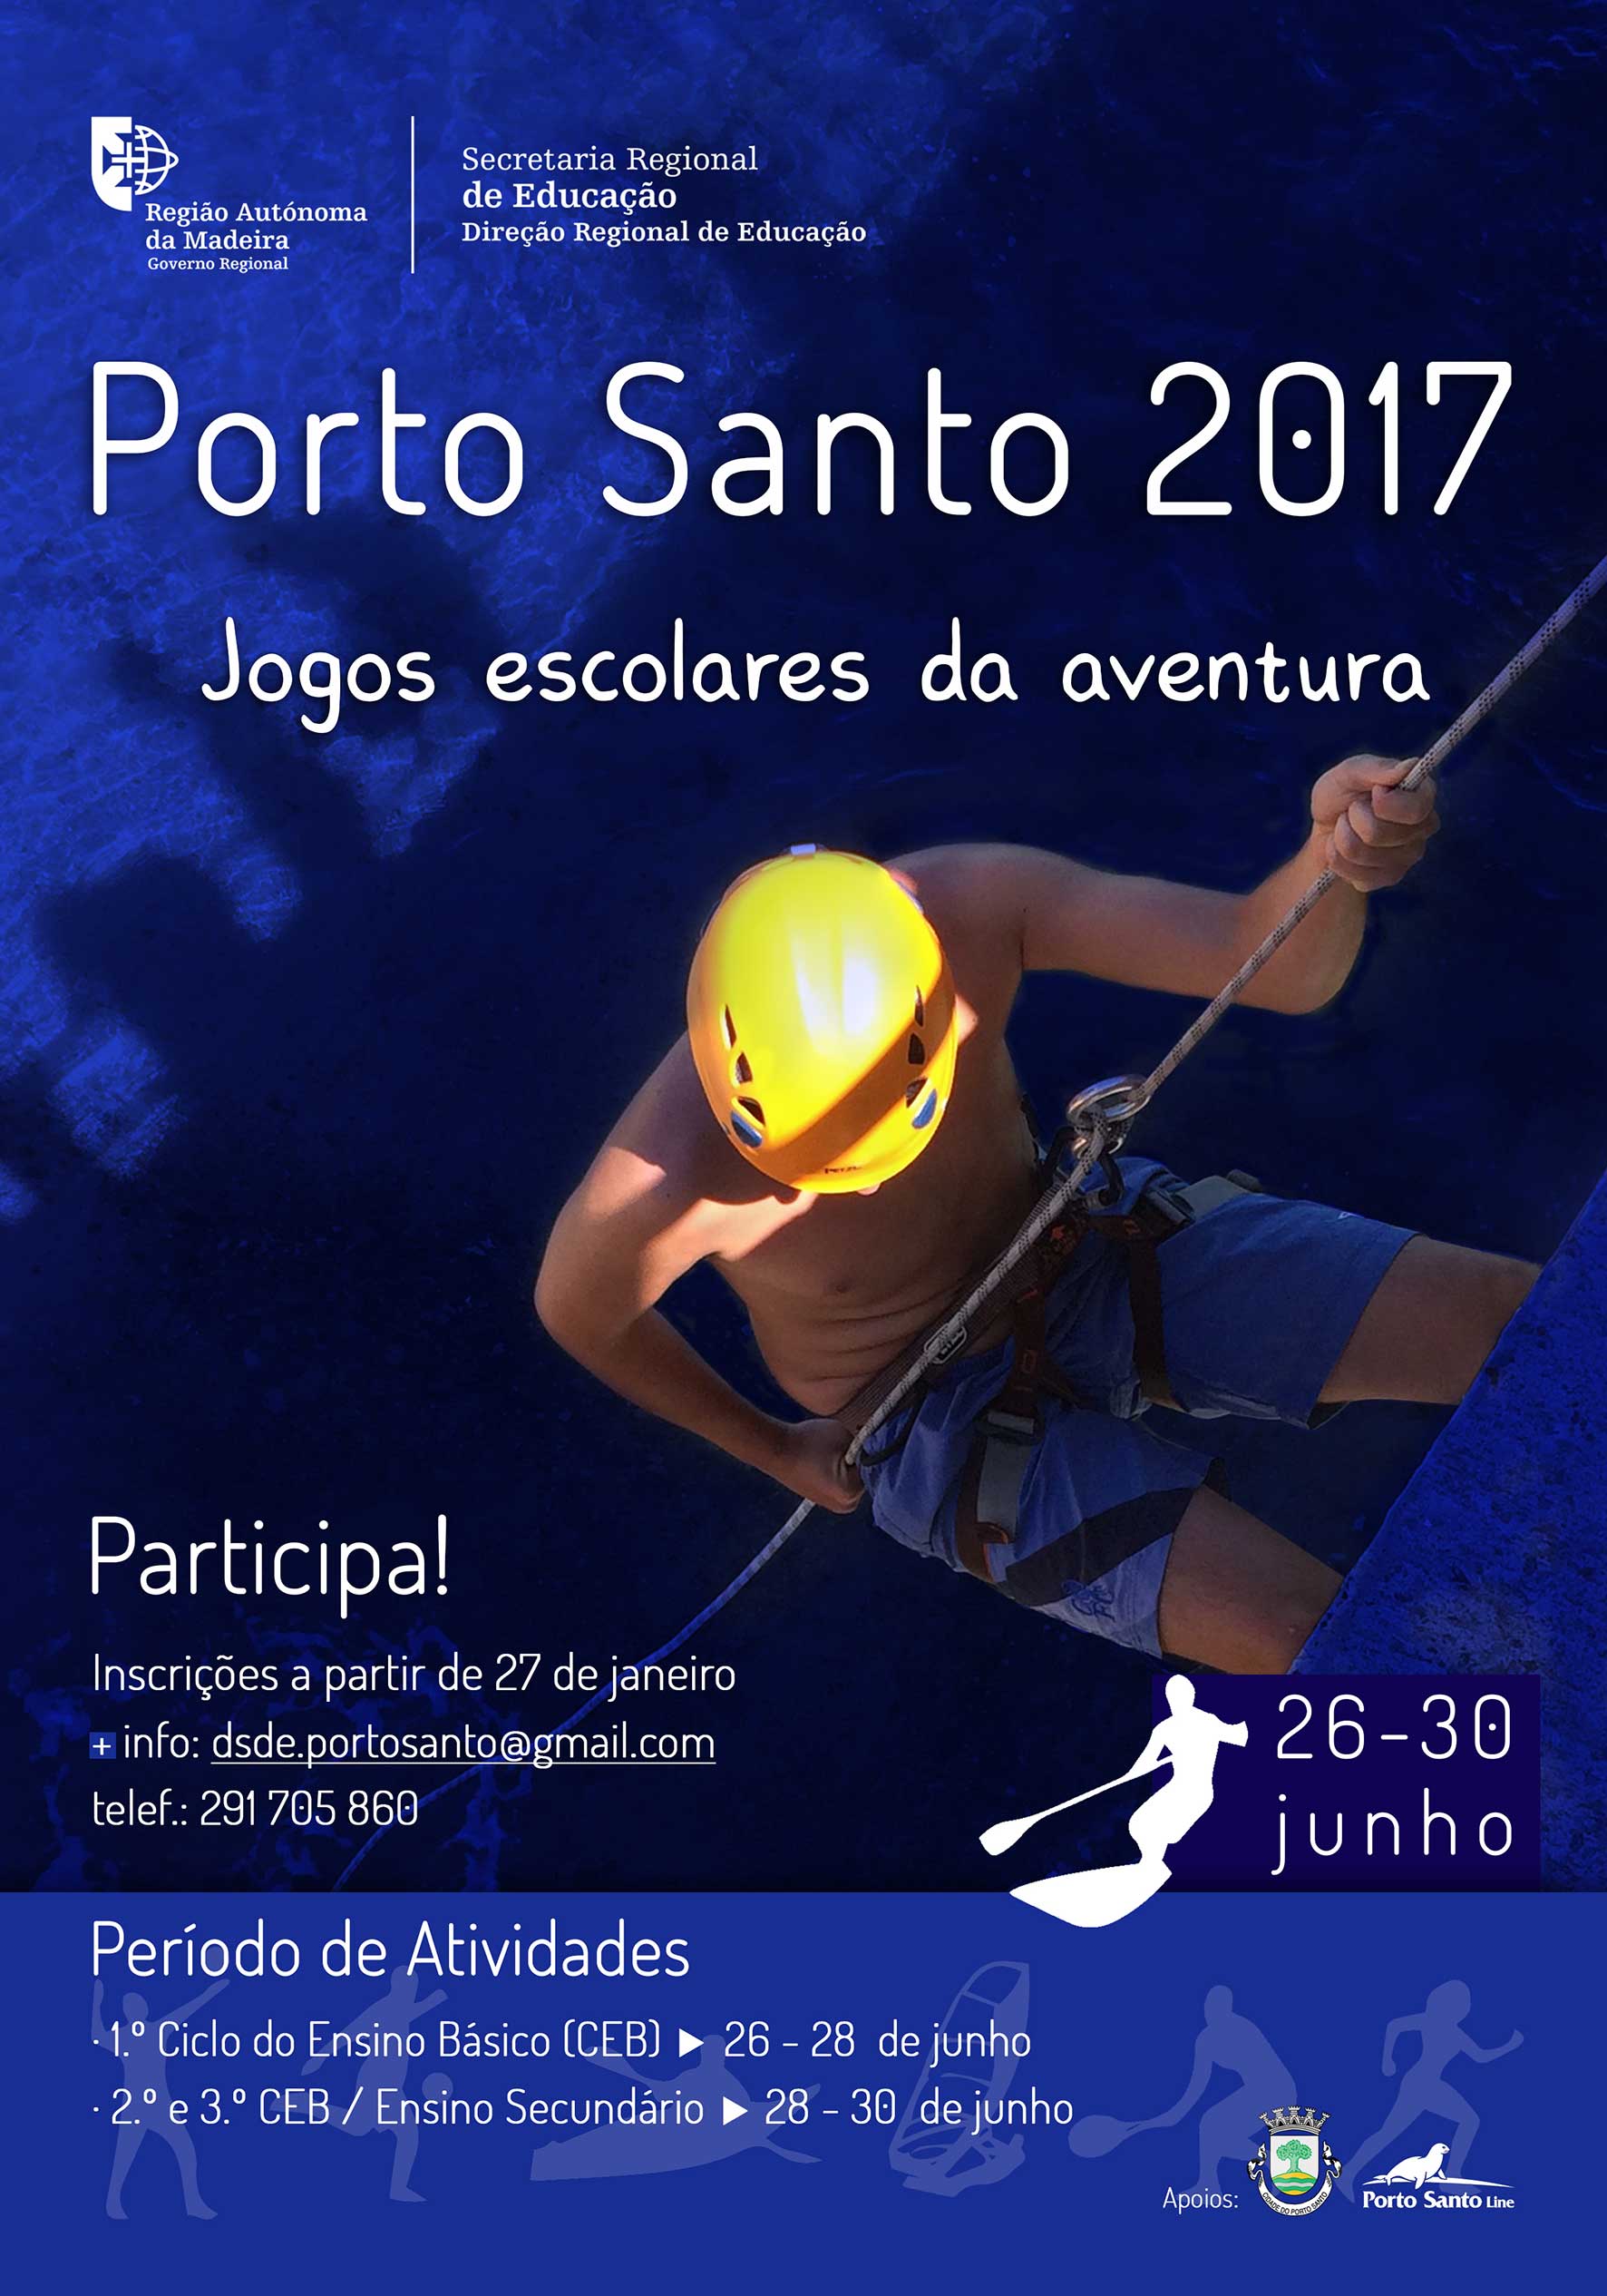 Porto Santo 2017 - Jogos Escolares da Aventura